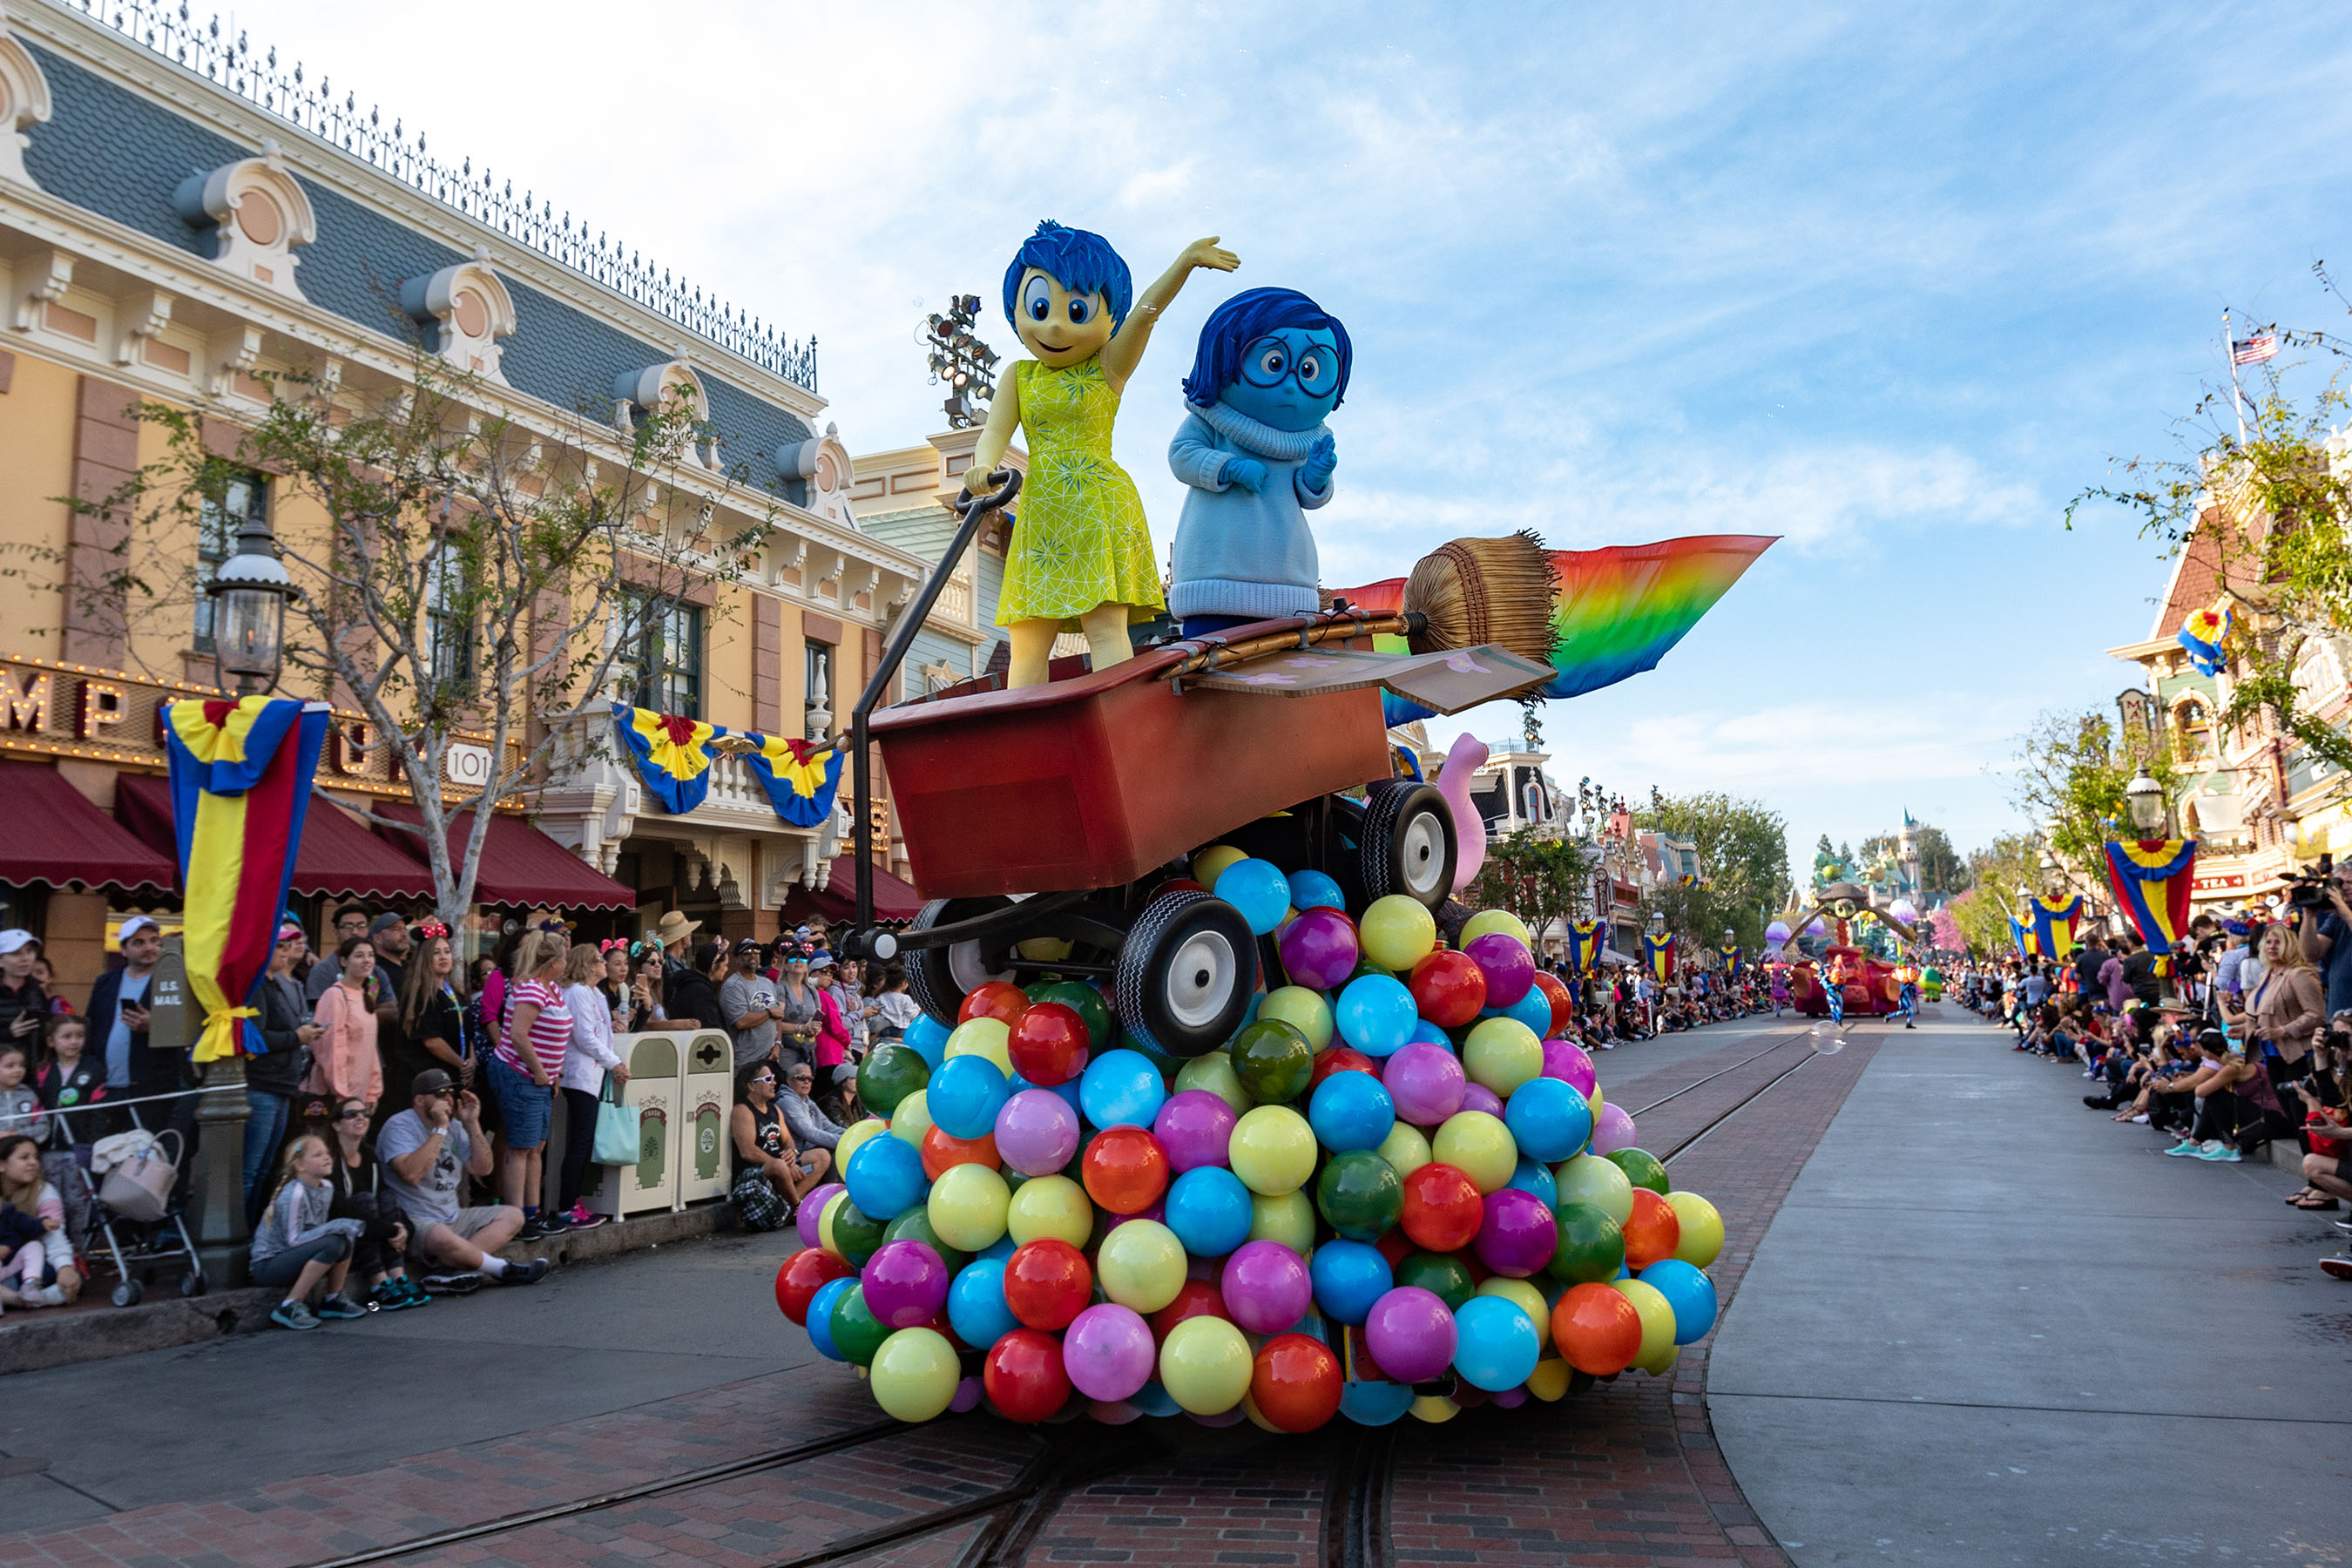 Pixar Play Parade Debuts at Disneyland for Pixar Fest!